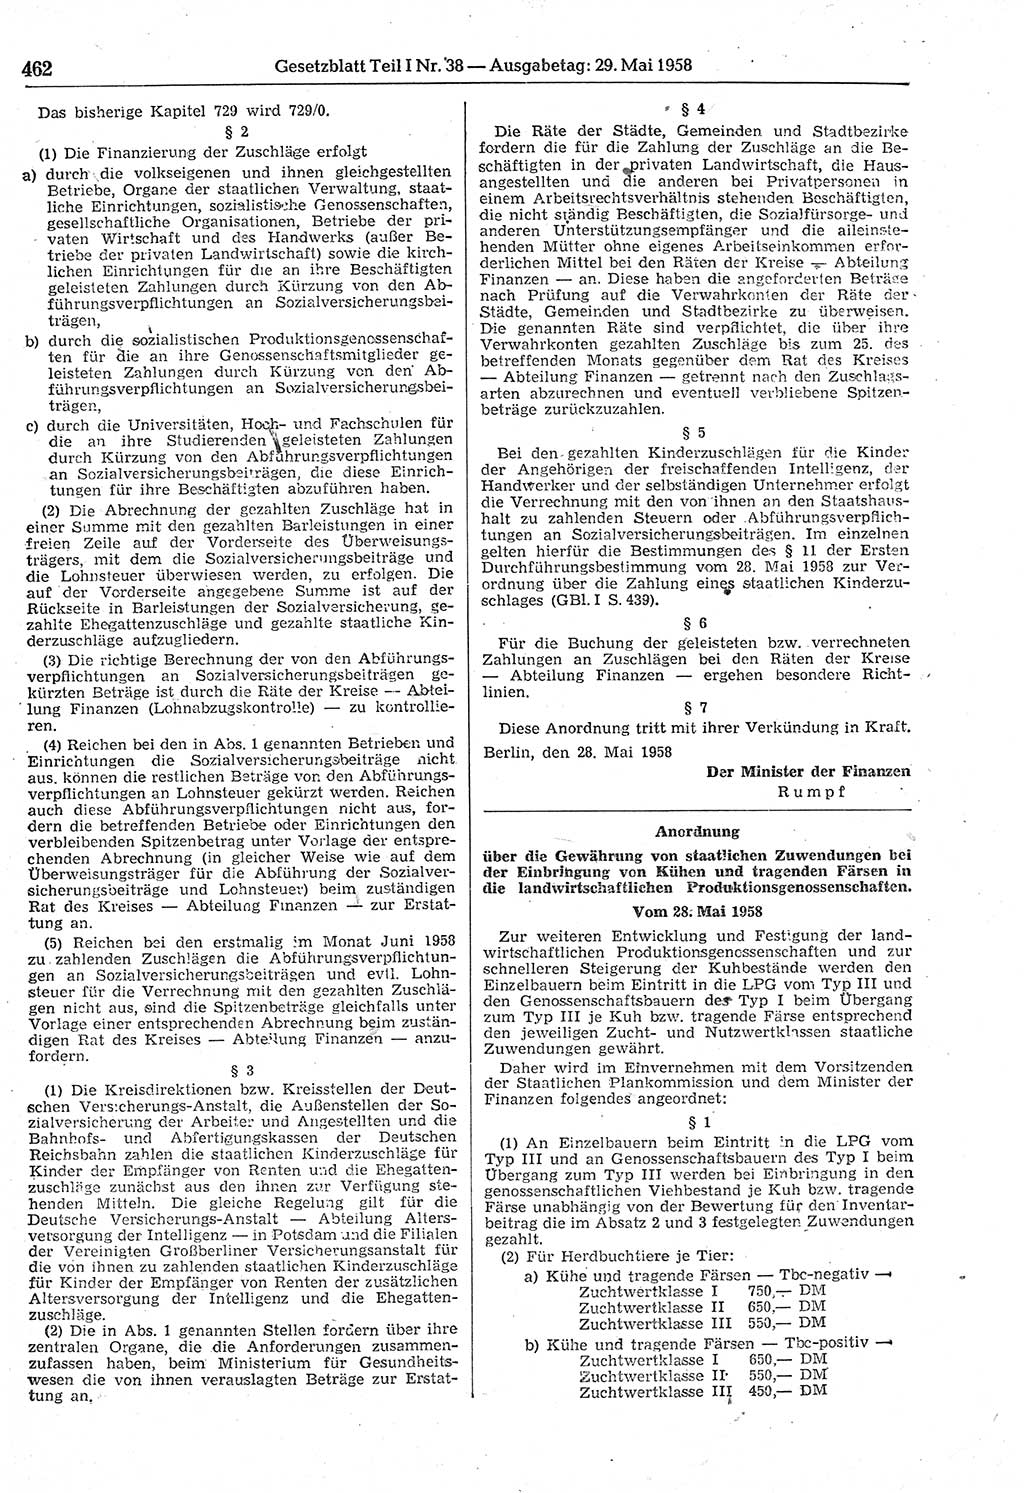 Gesetzblatt (GBl.) der Deutschen Demokratischen Republik (DDR) Teil Ⅰ 1958, Seite 462 (GBl. DDR Ⅰ 1958, S. 462)